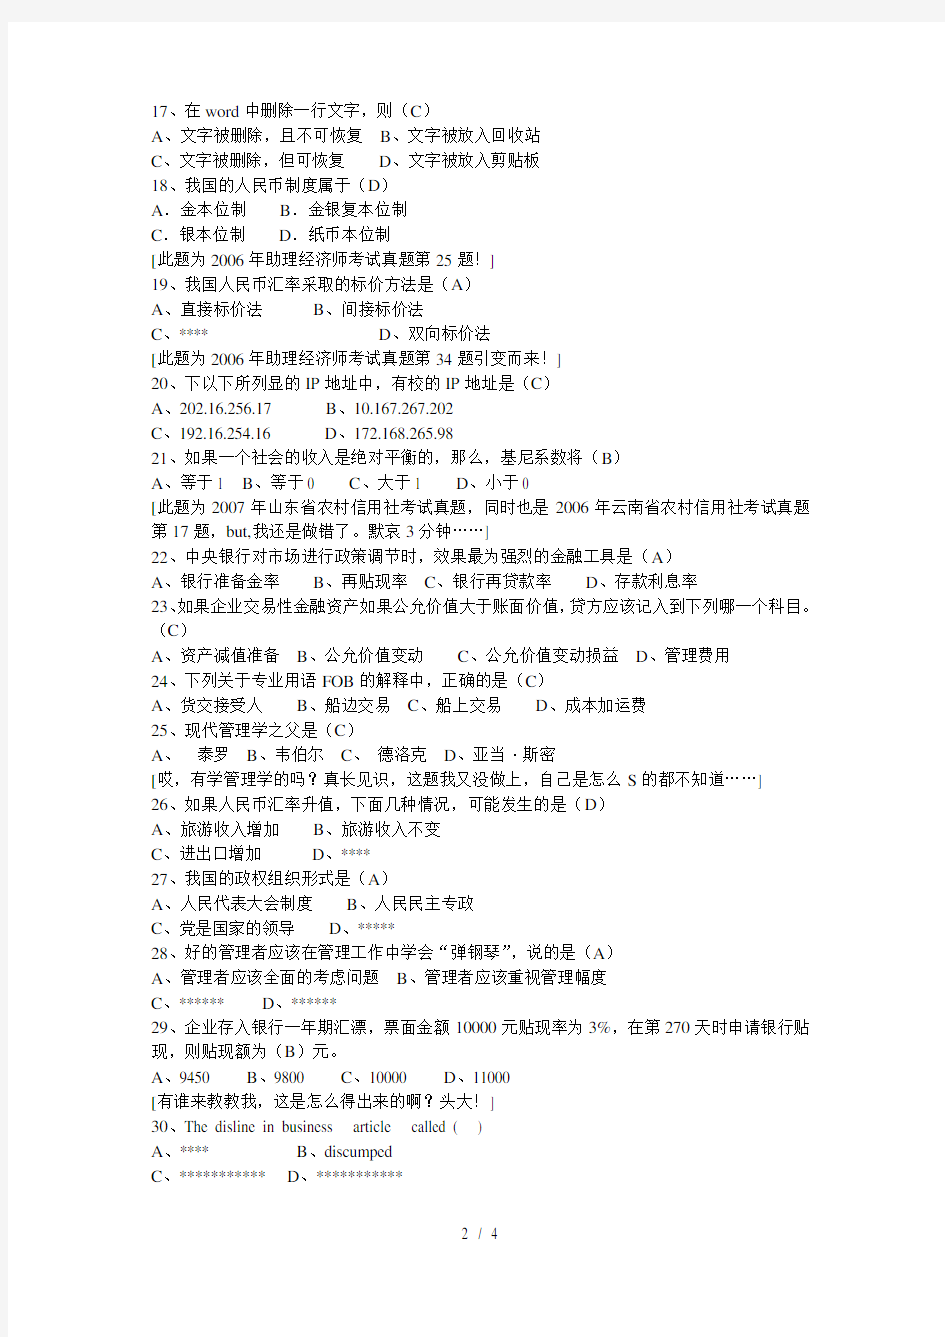 2008年河北省农村信用社招聘考试笔试题真题